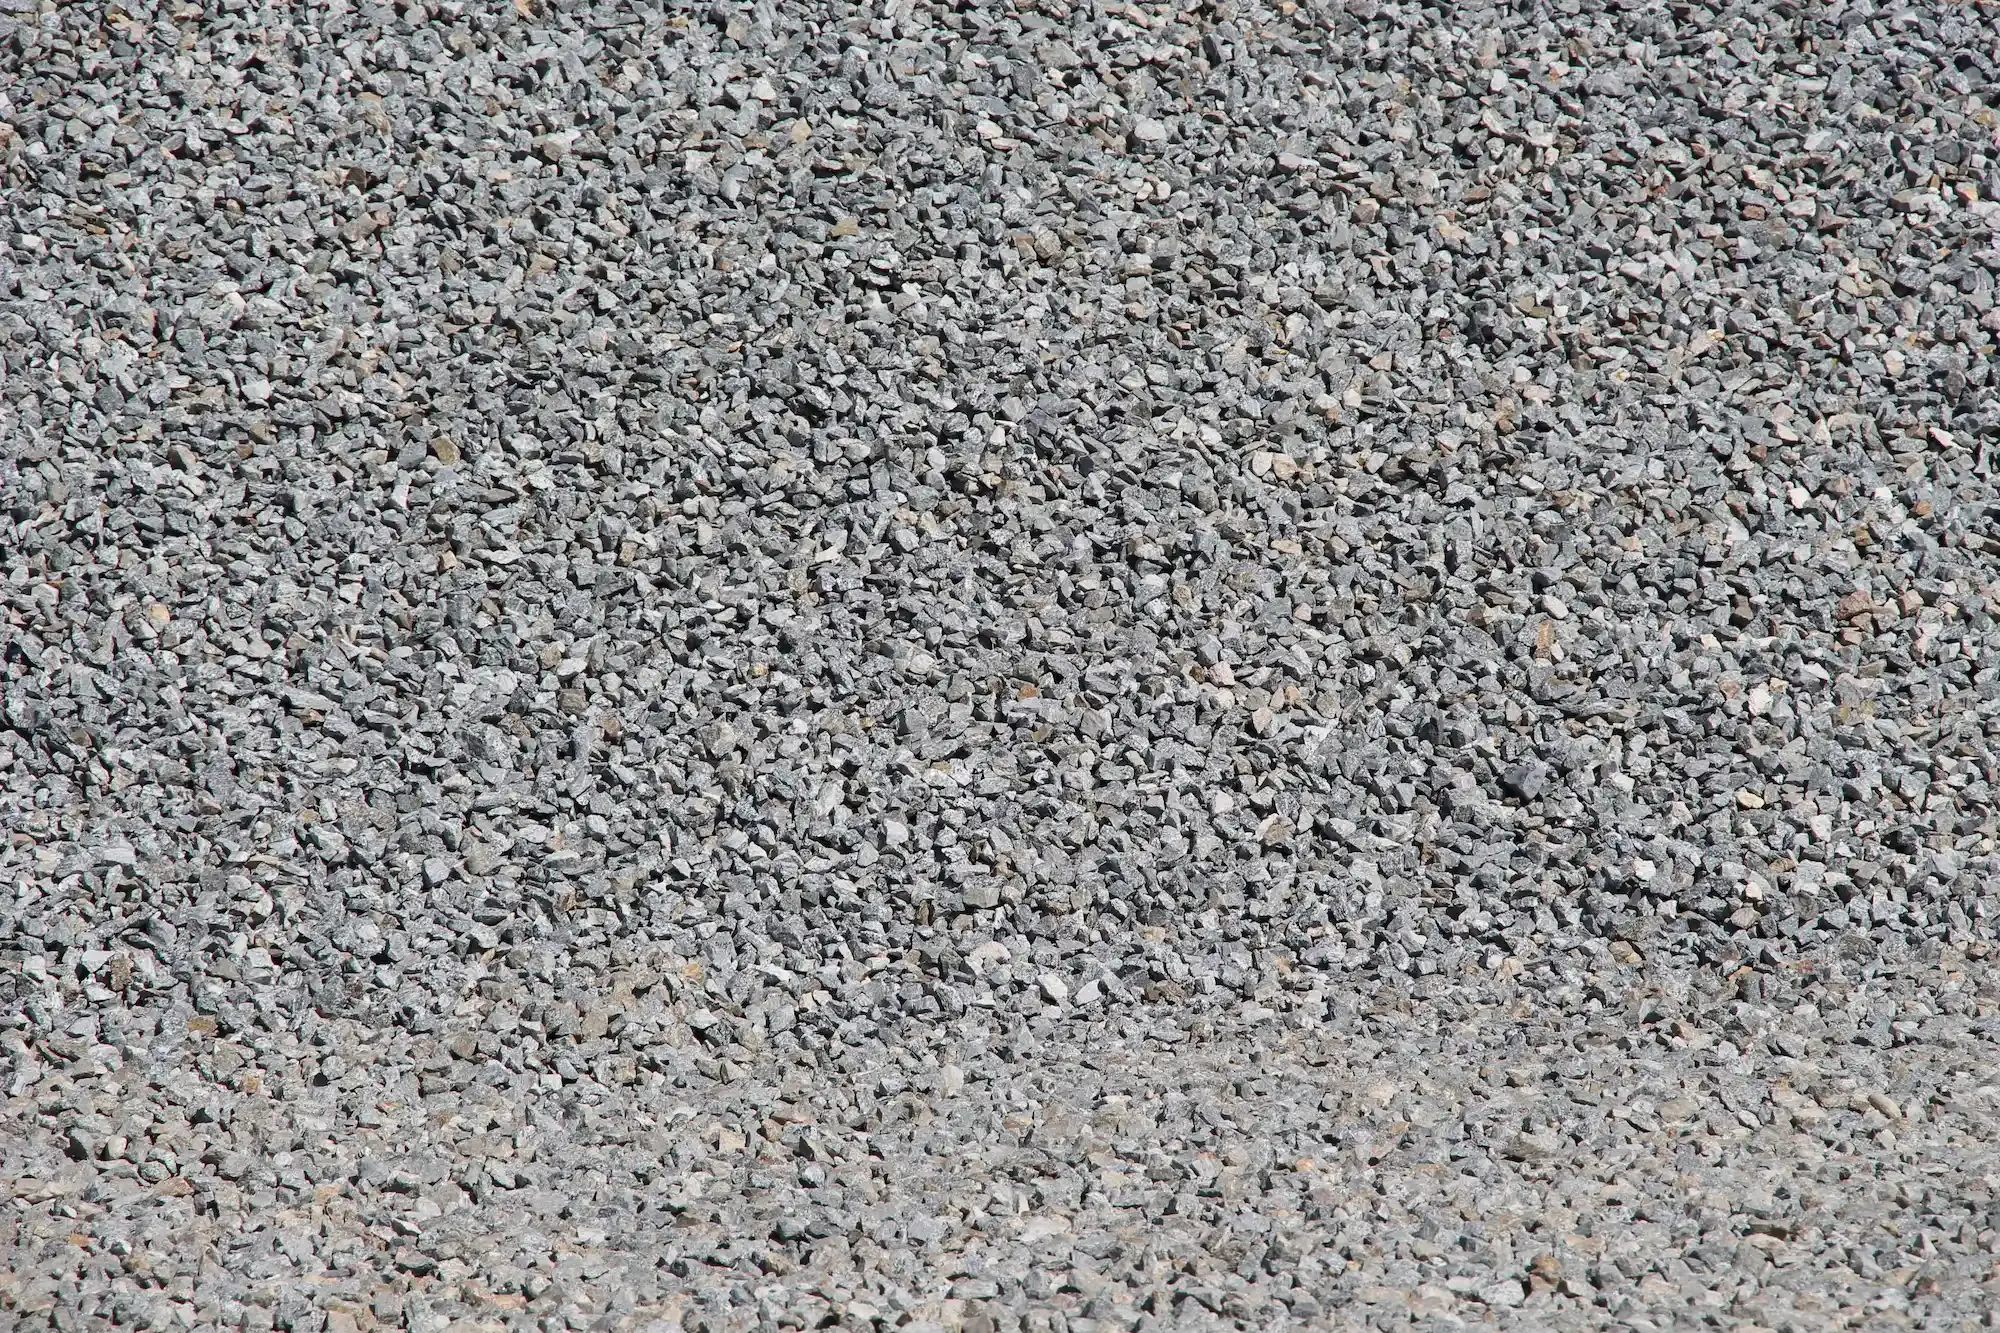 KV Granite Landscape Rock & Chips